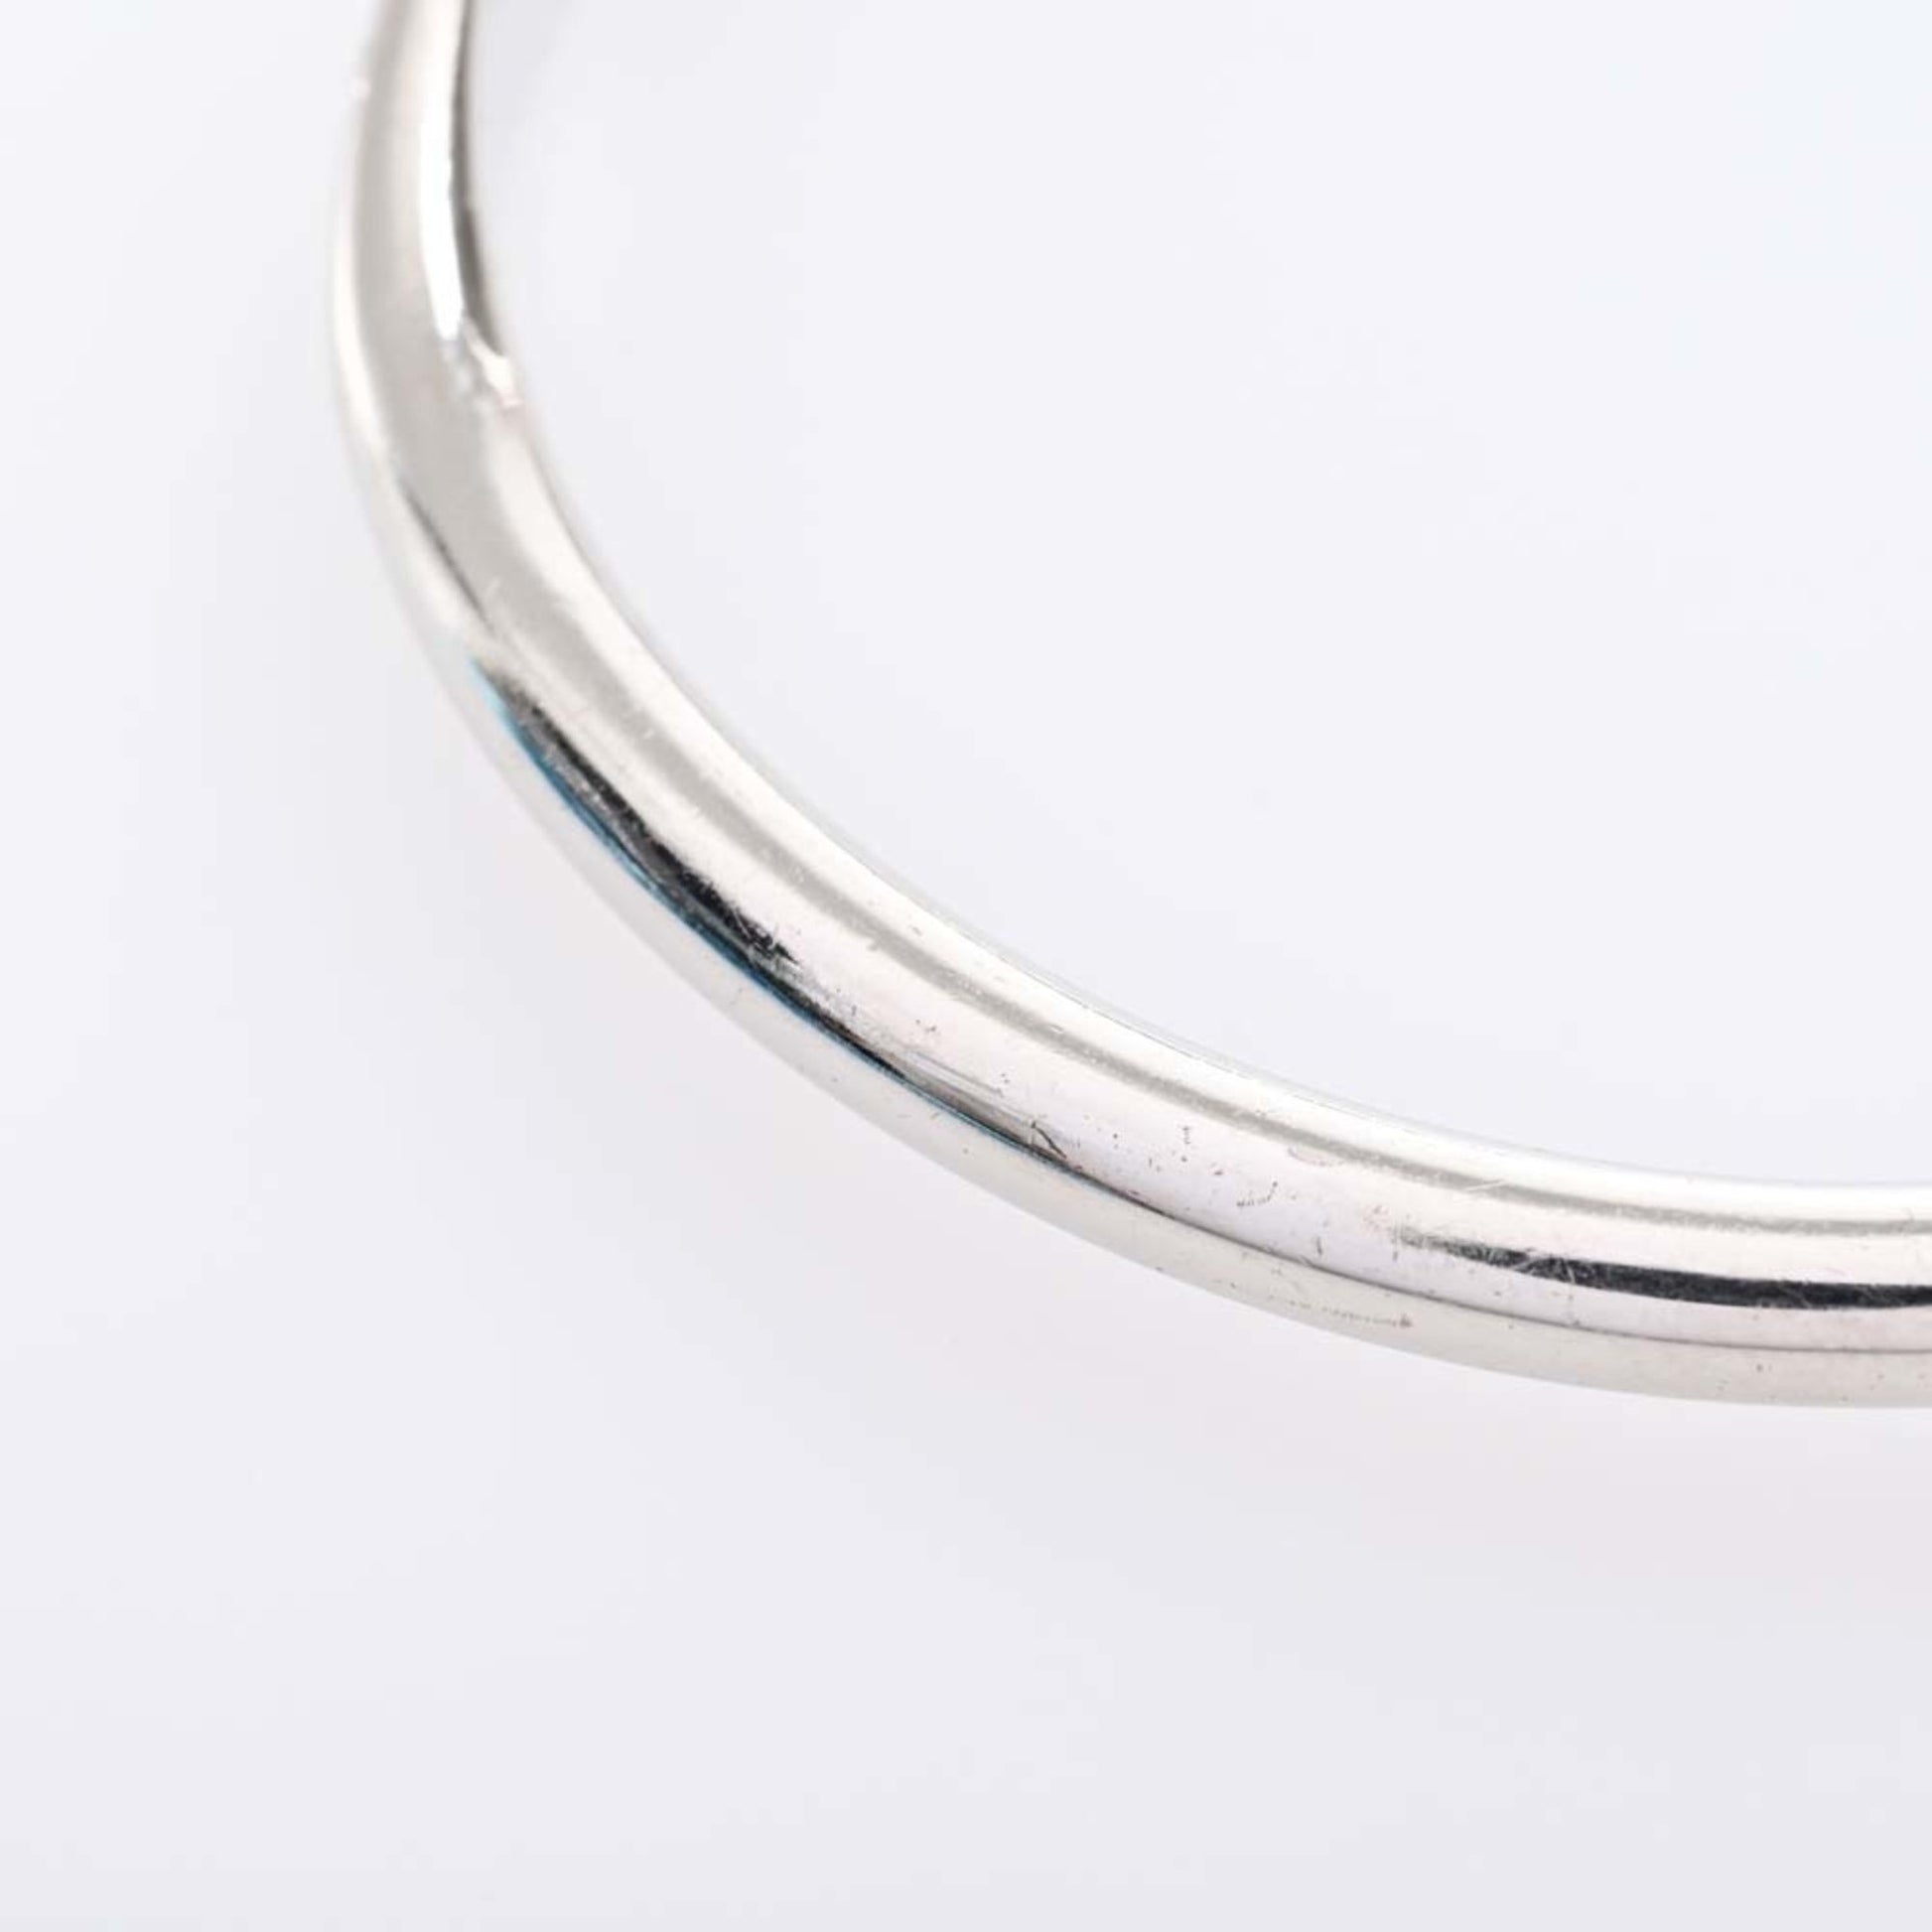 LOUIS VUITTON Jonck Monogram Bracelet Bangle #M M64839 Silver